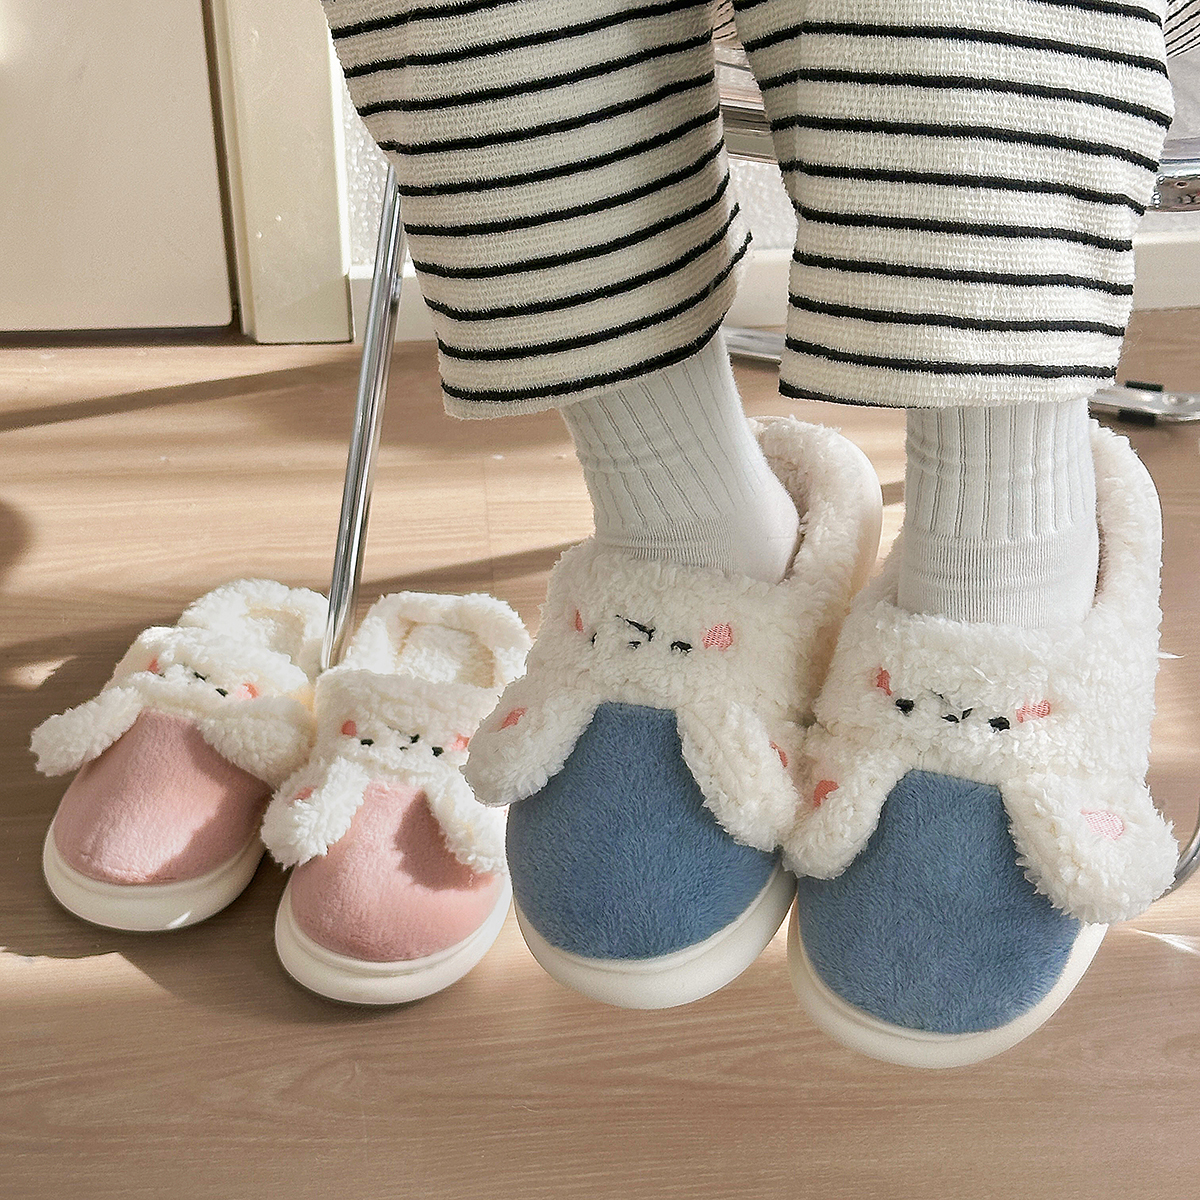 情侣可爱兔子棉拖男女冬季居家包头保暖防滑拖鞋半包跟毛绒月子鞋